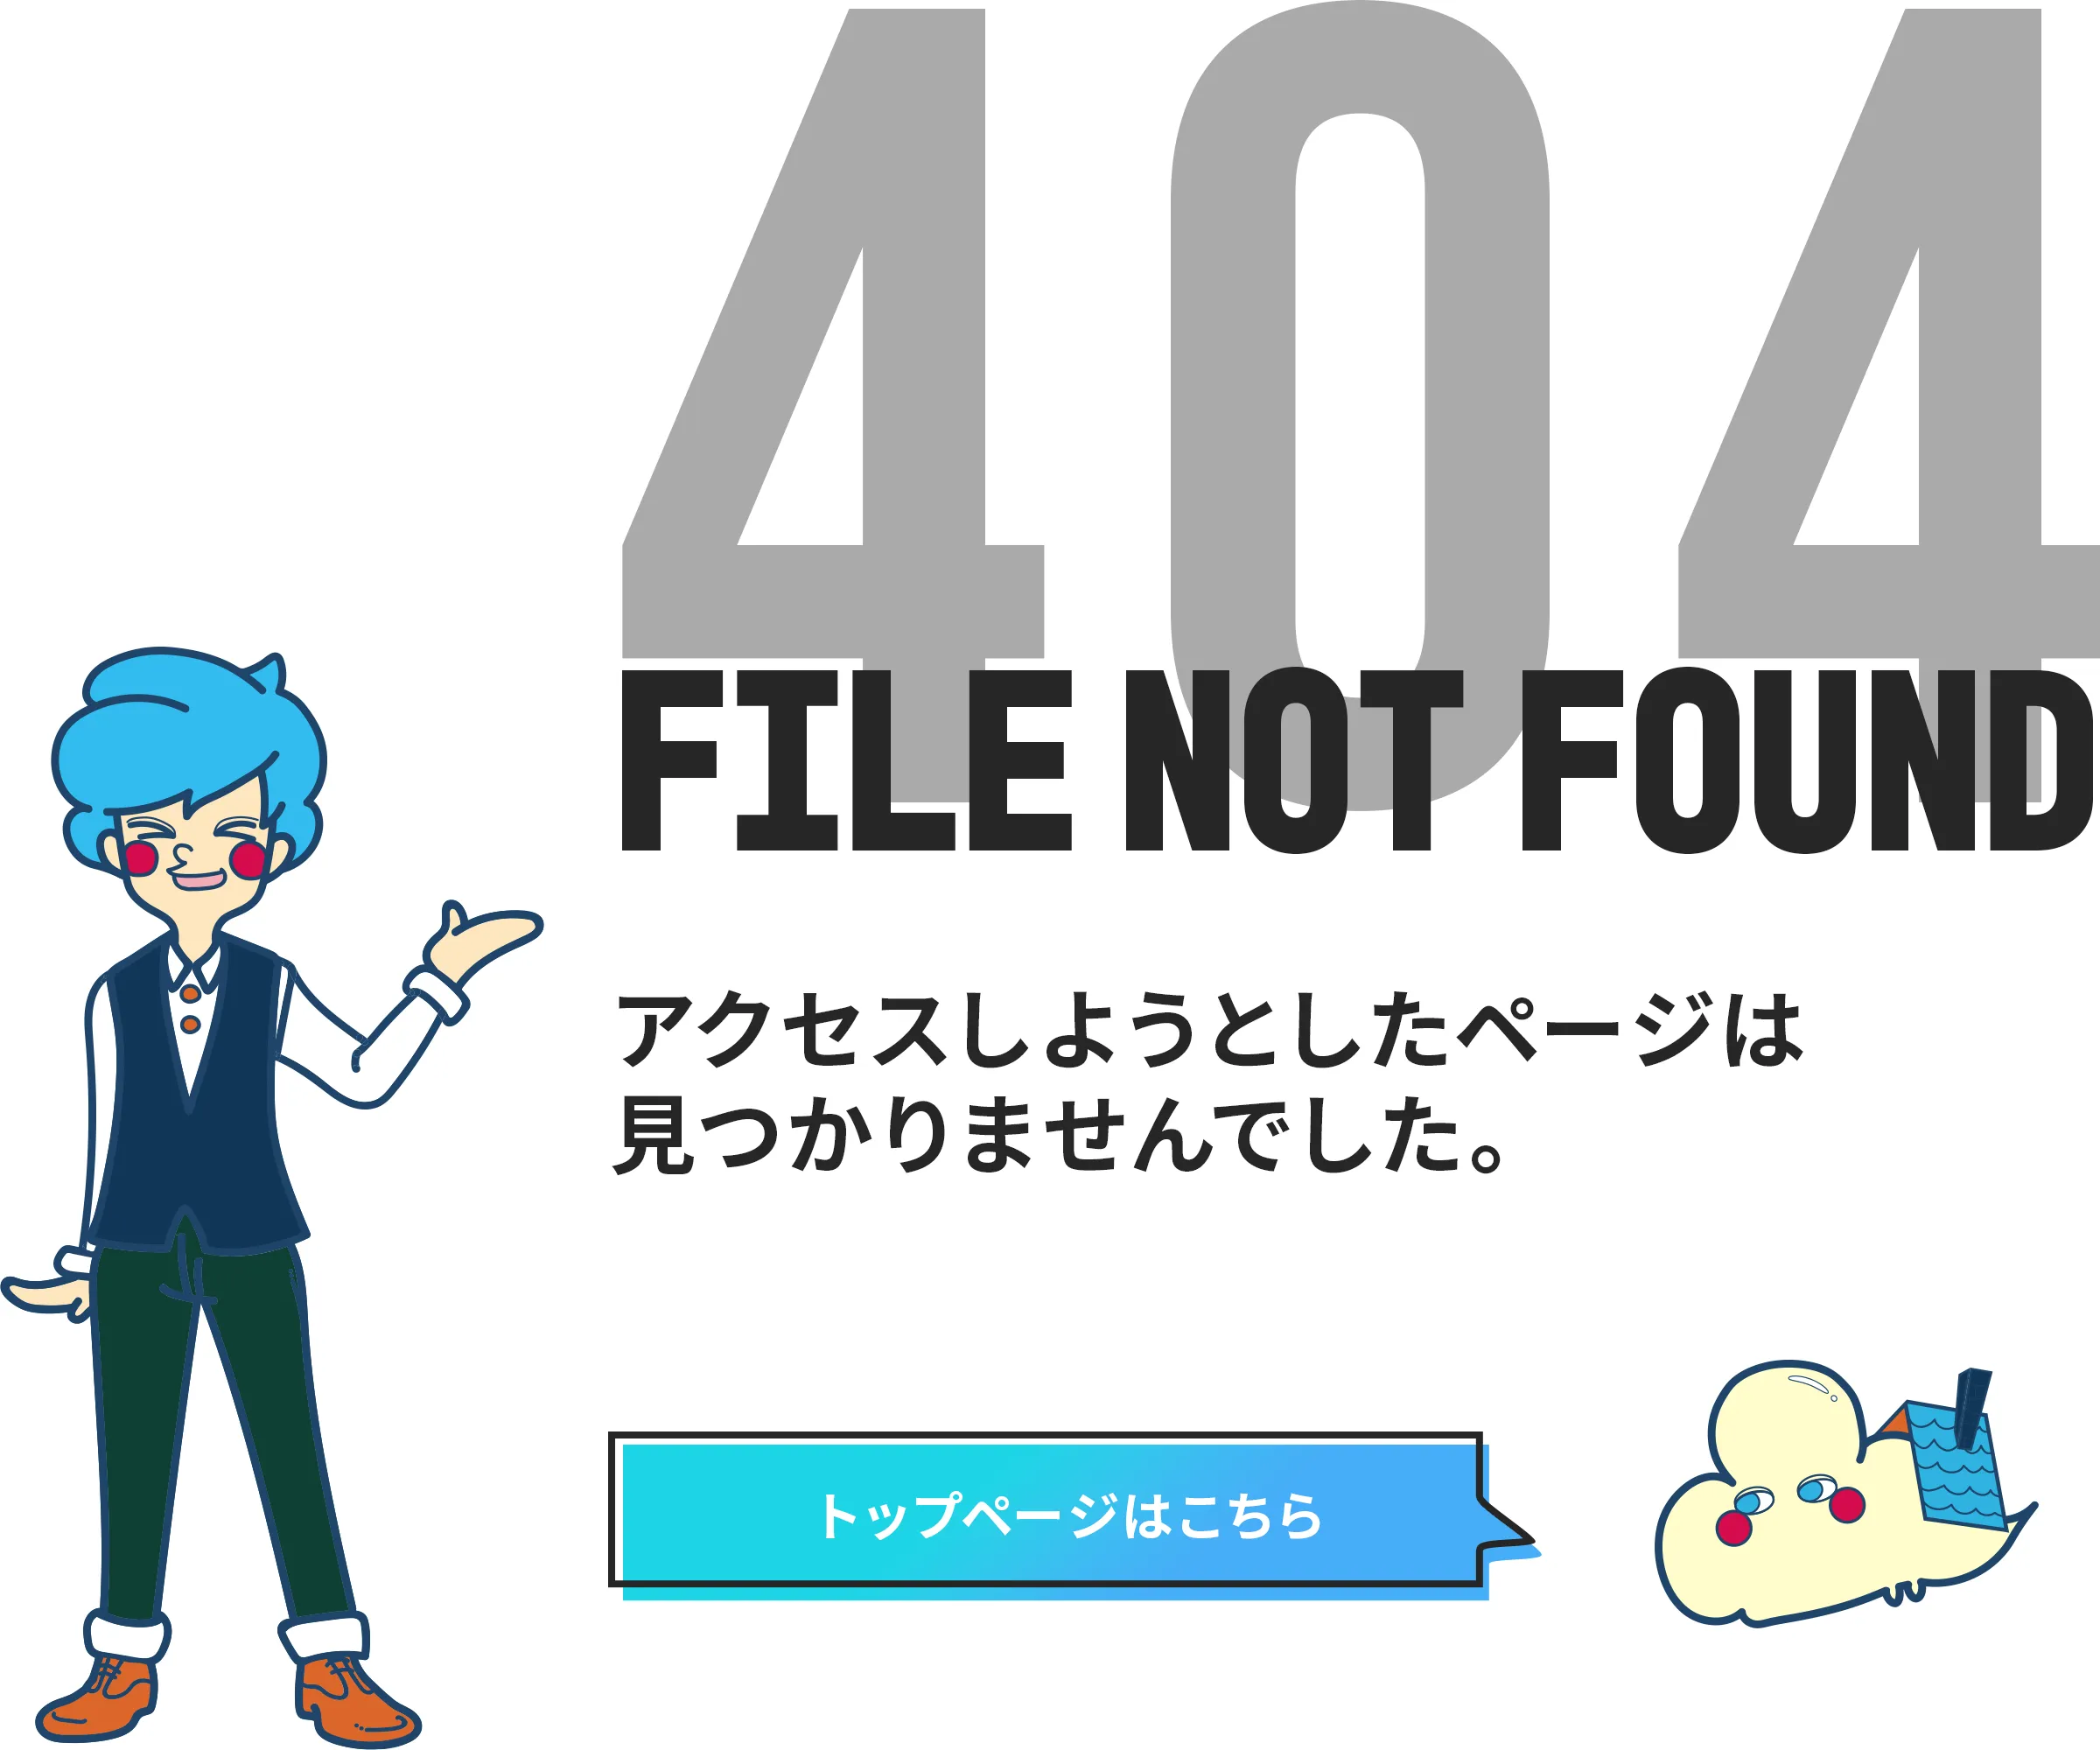 404 NOT FOUND アクセスしようとしたページは見つかりませんでした。